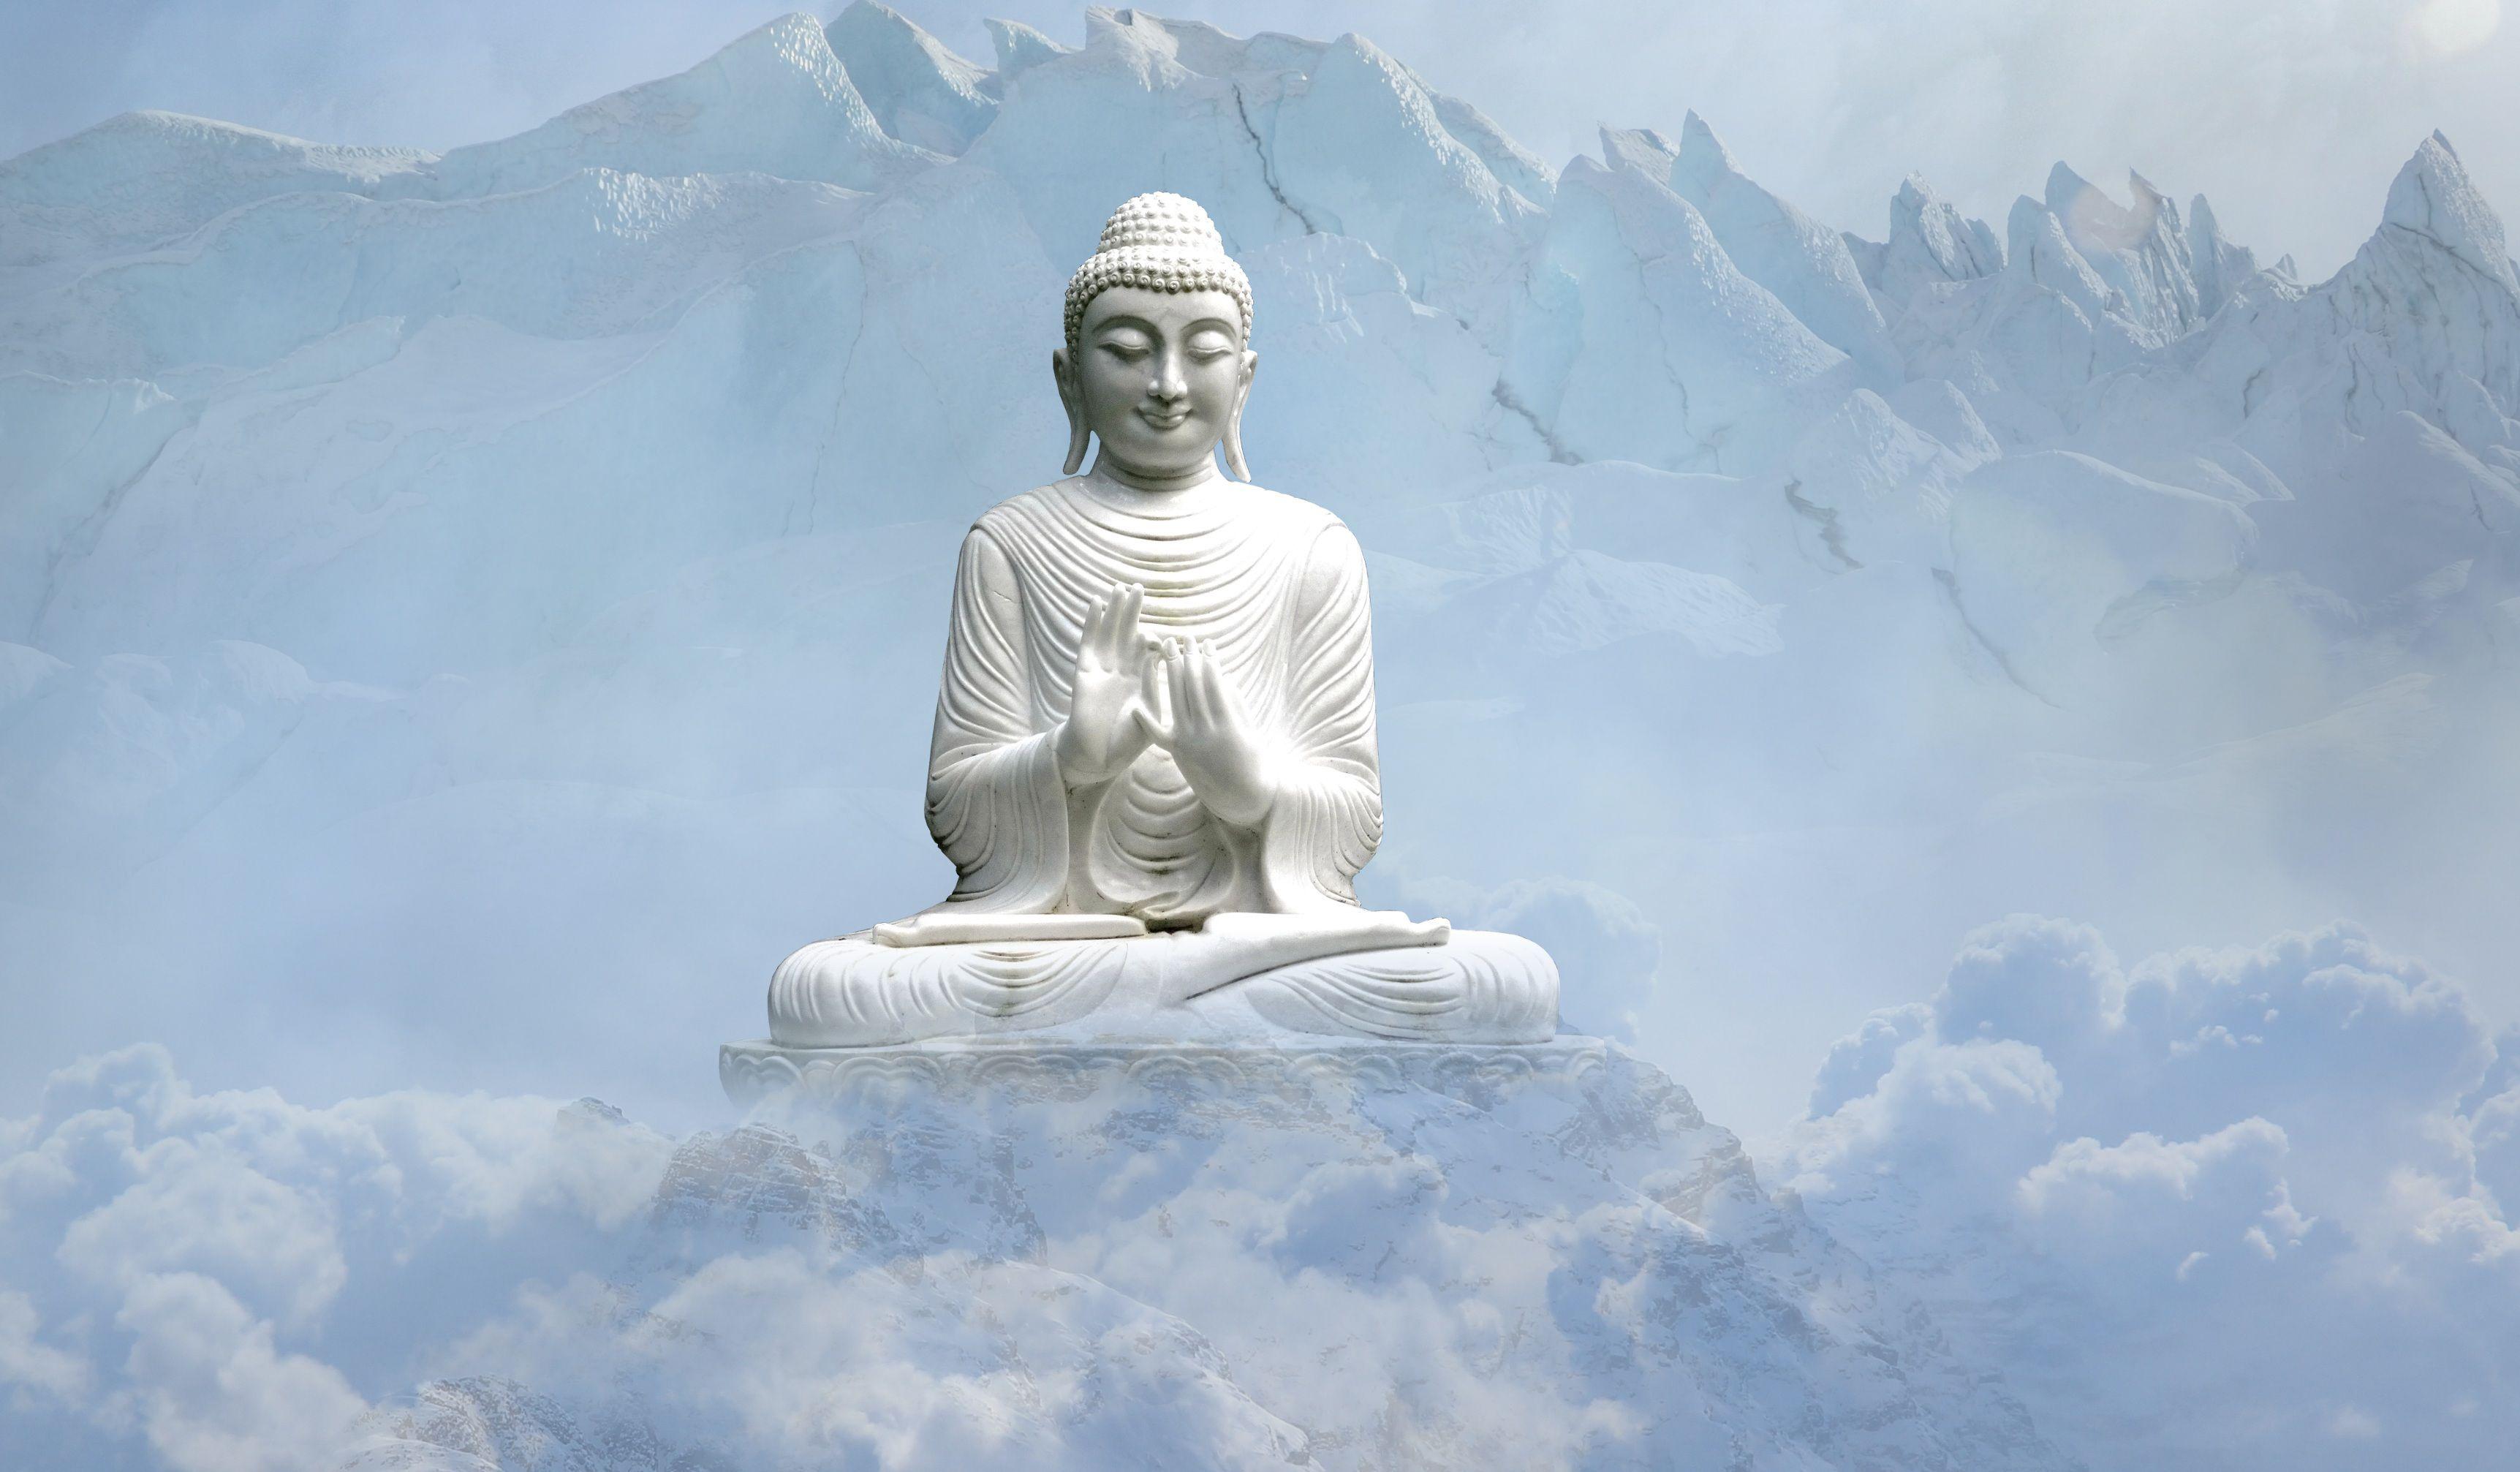 Khi nhìn vào ảnh Phật đẹp này, bạn sẽ cảm thấy thanh tịnh và yên bình trong lòng. Hình ảnh Phật tuyệt đẹp này không chỉ làm tâm hồn bạn an lạc mà còn thúc đẩy bạn tìm kiếm sự cân bằng và hạnh phúc trong cuộc sống.